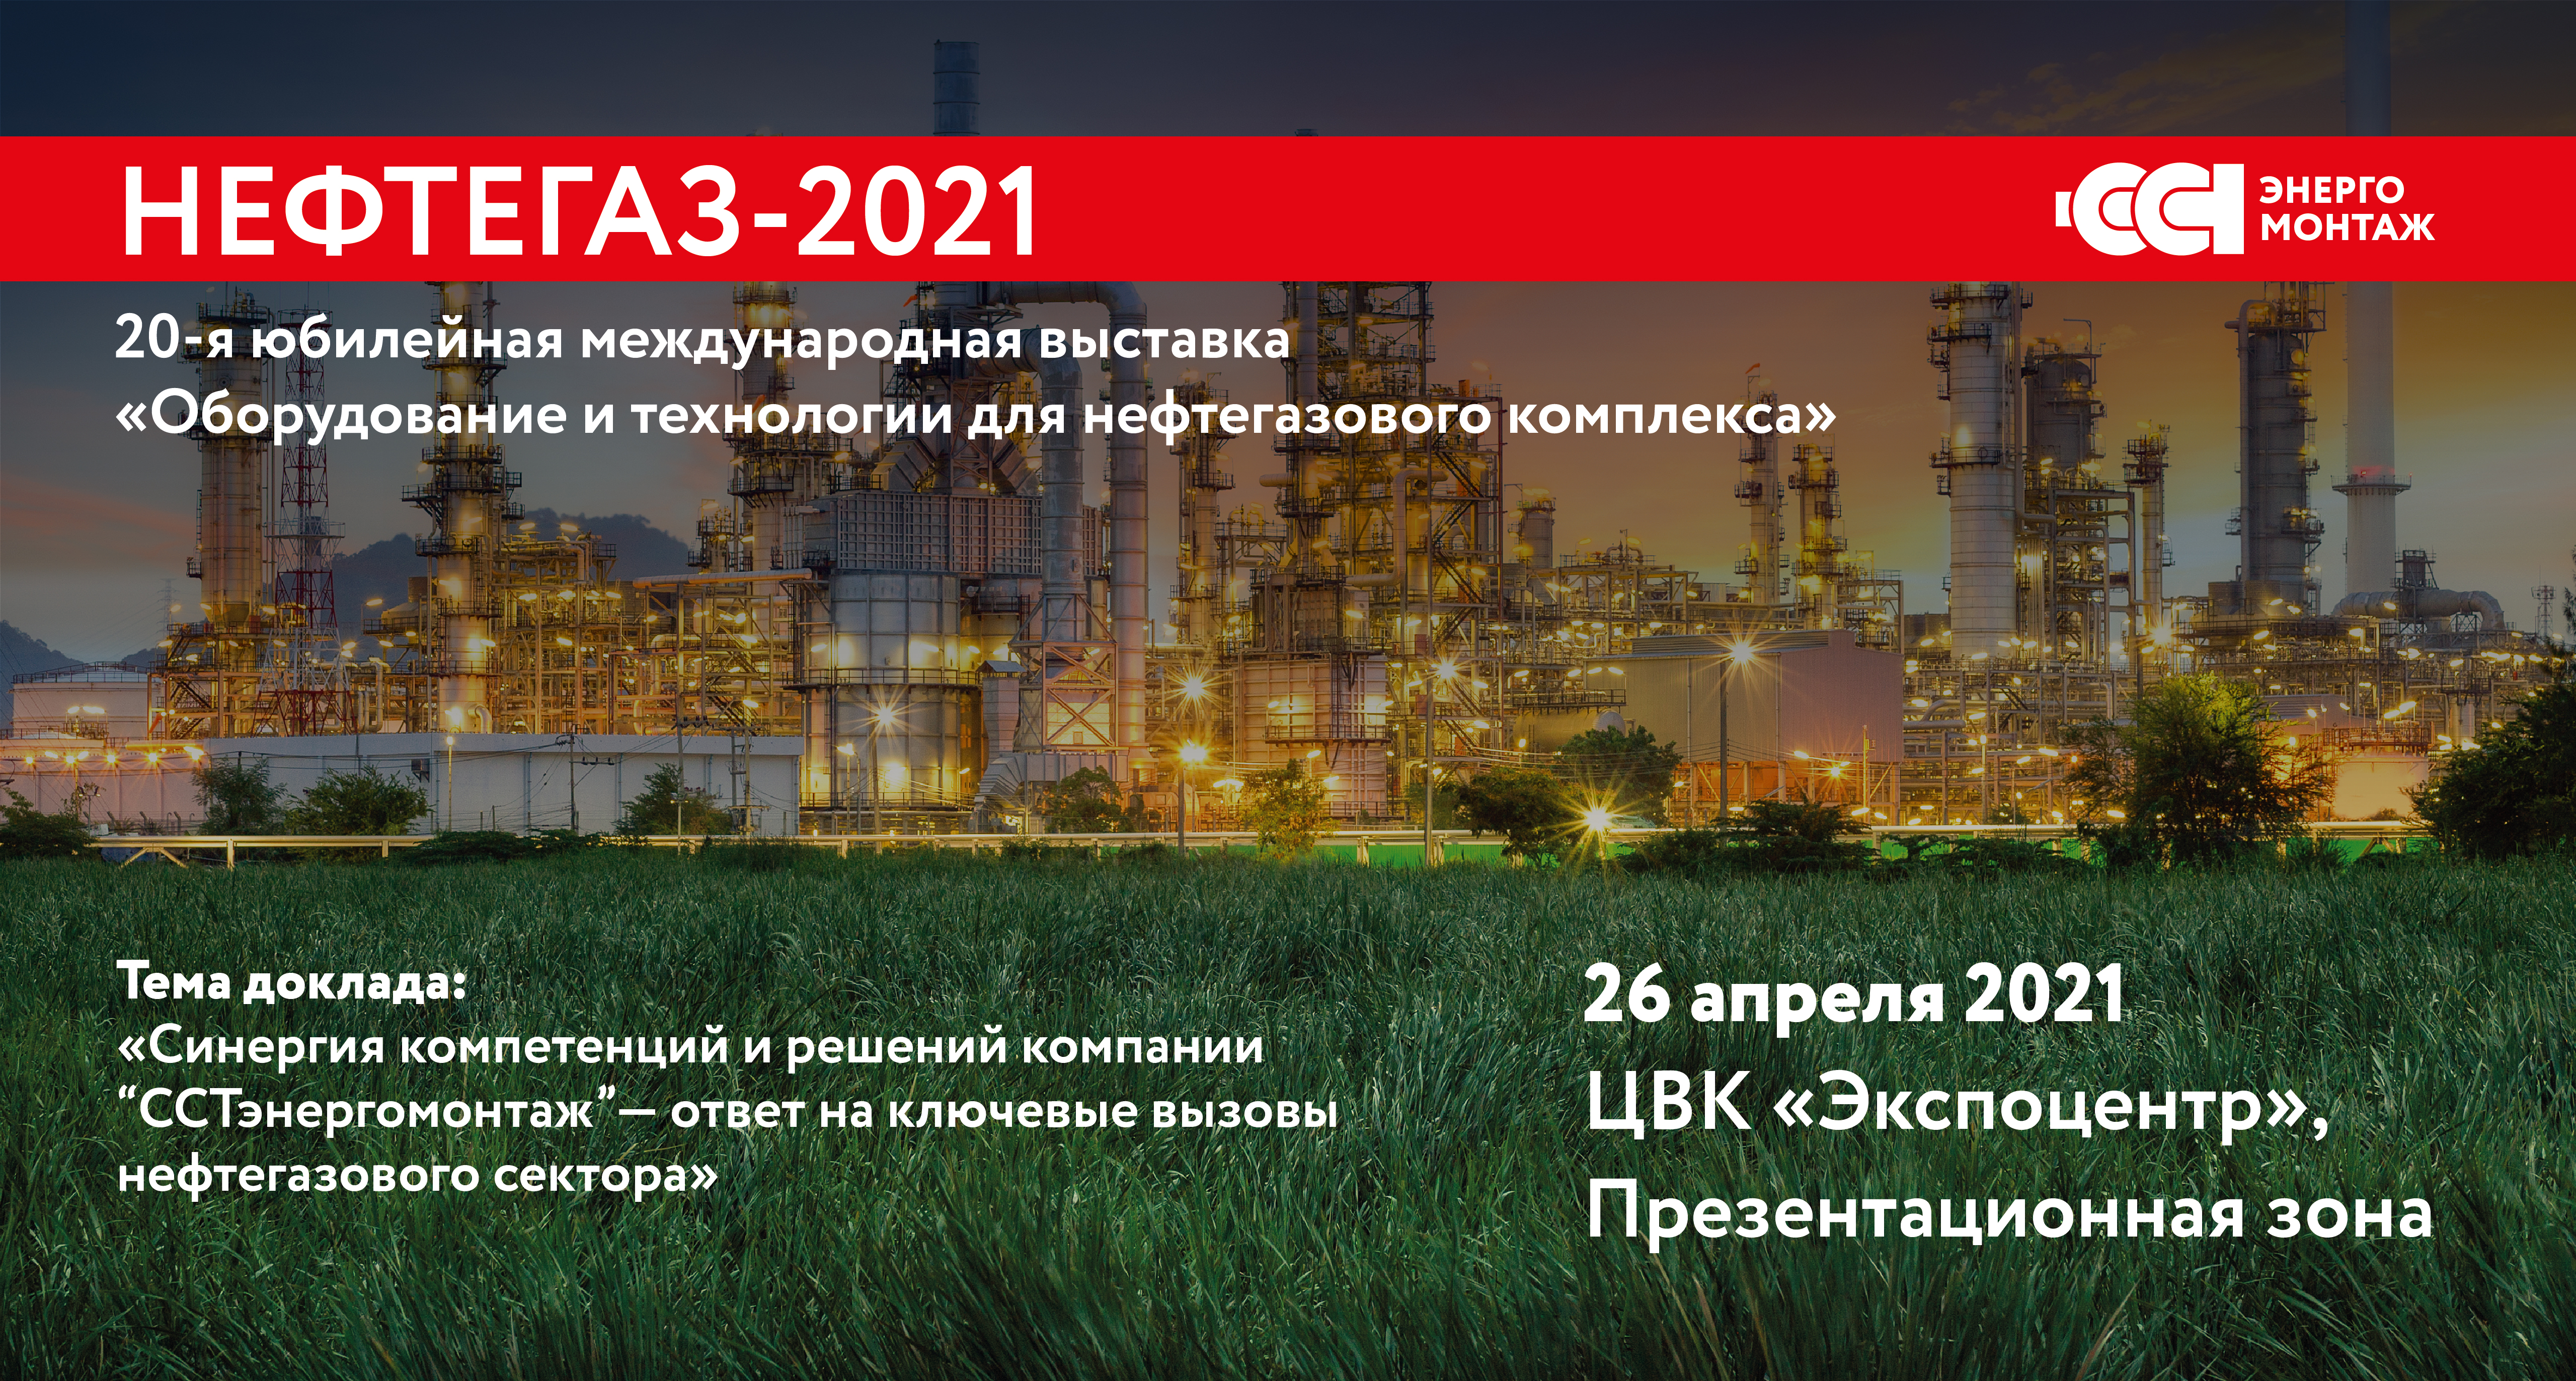 Решения и компетенции компании «ССТэнергомонтаж» на выставке «Нефтегаз–2021»